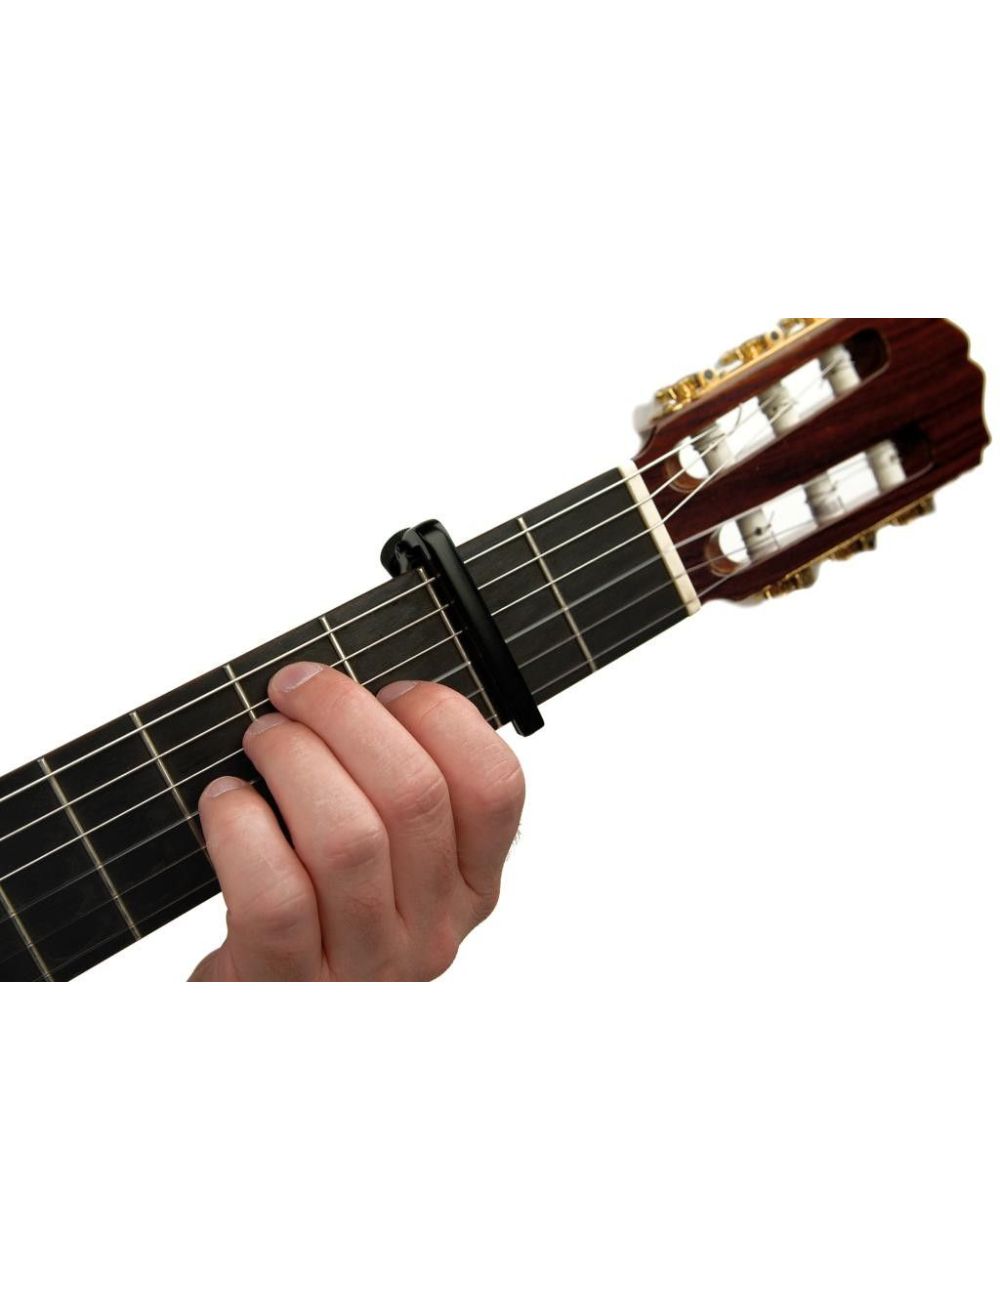 Capodastre pour Guitare Classique - Accessoire pour Guitare